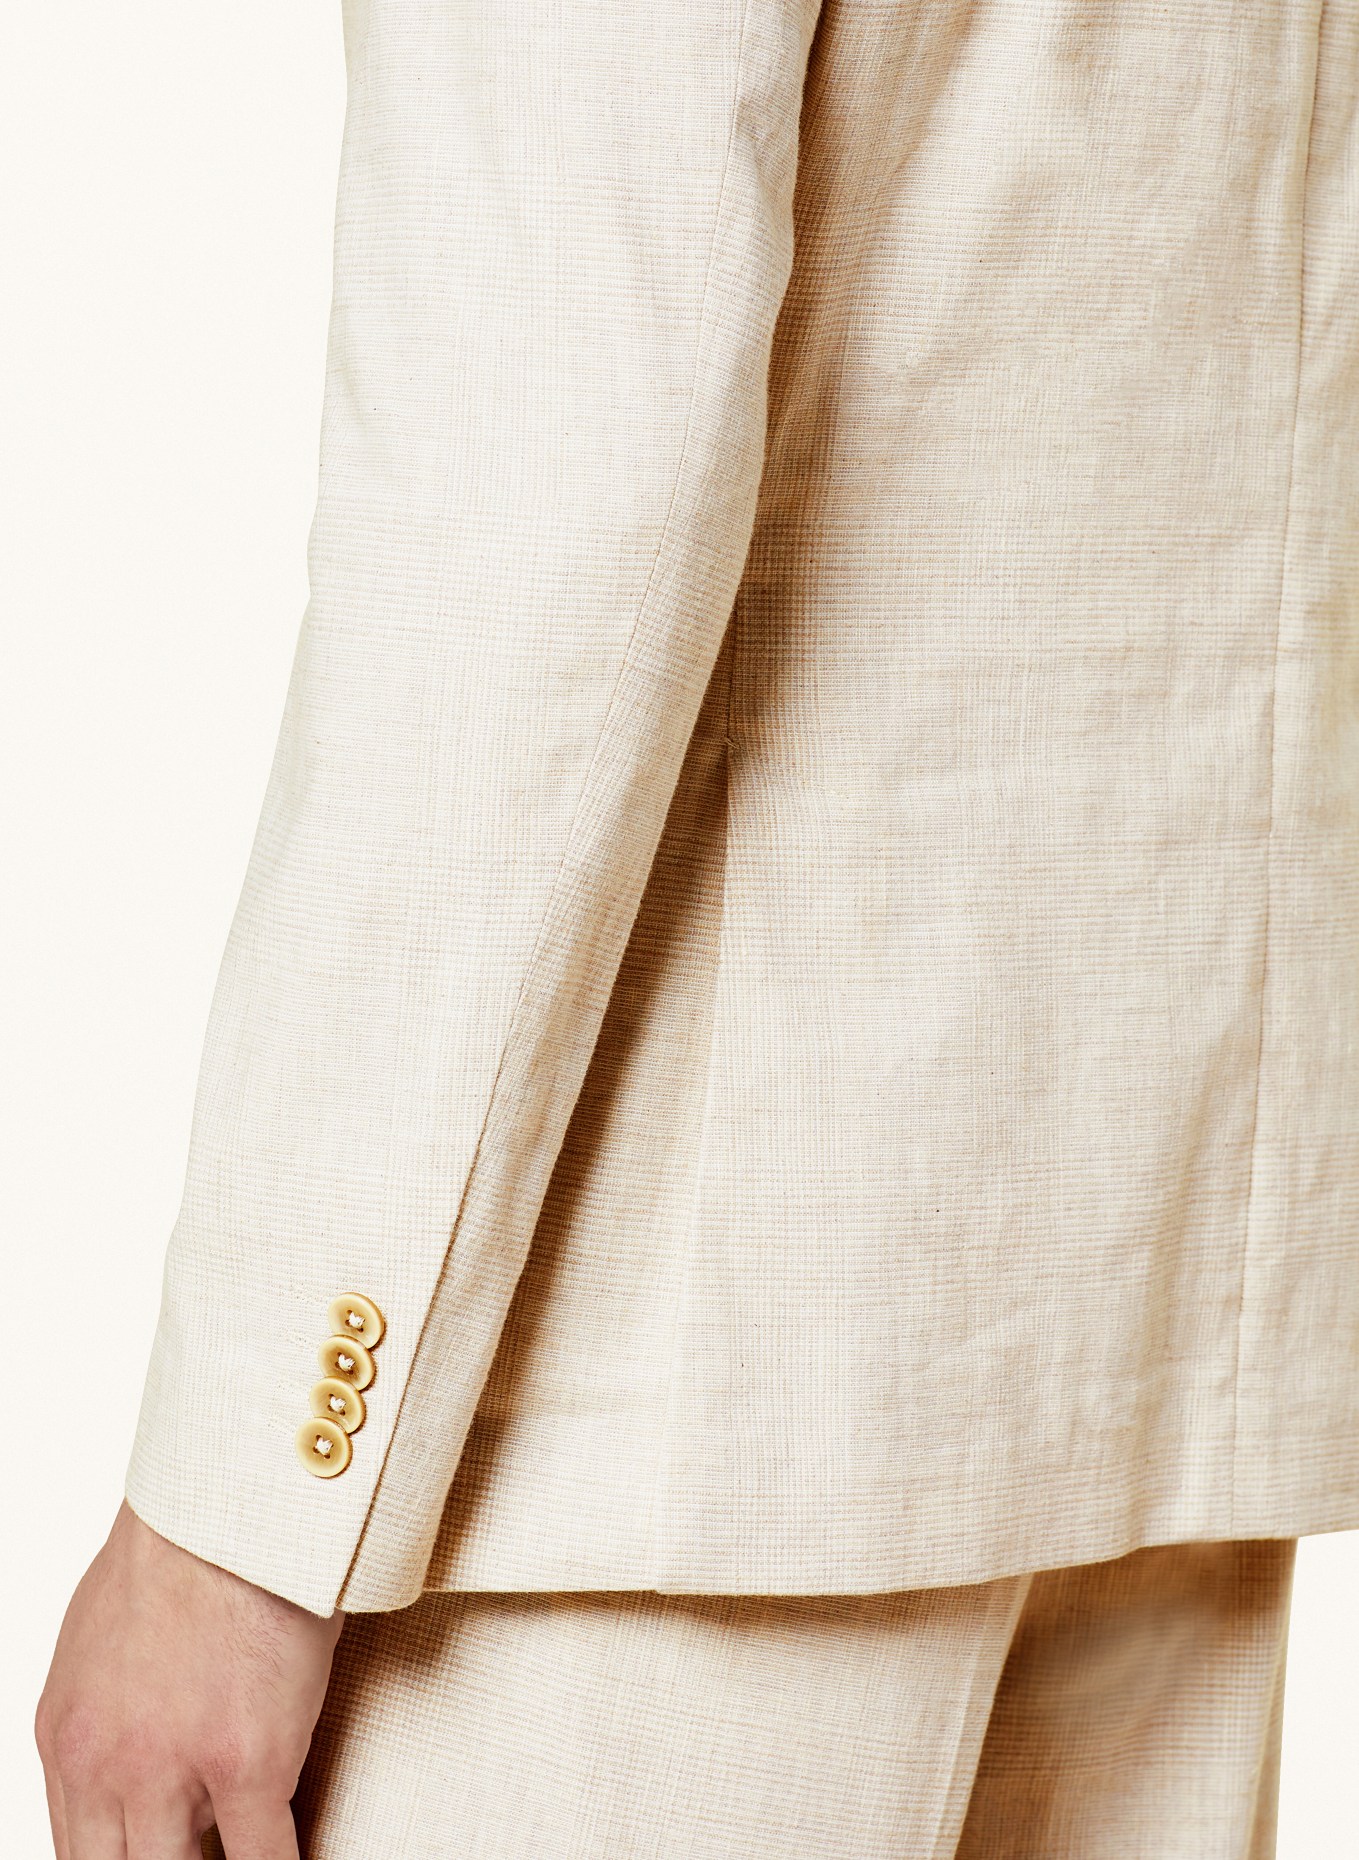 PAUL Suit jacket Slim Fit, Color: 210 Light Beige Check (Image 6)